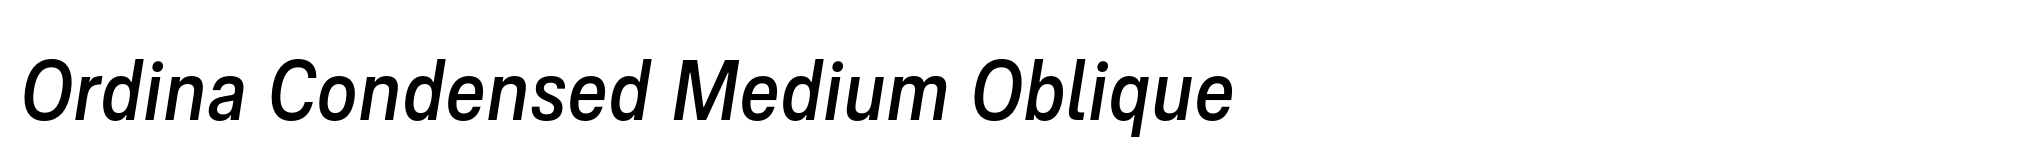 Ordina Condensed Medium Oblique image